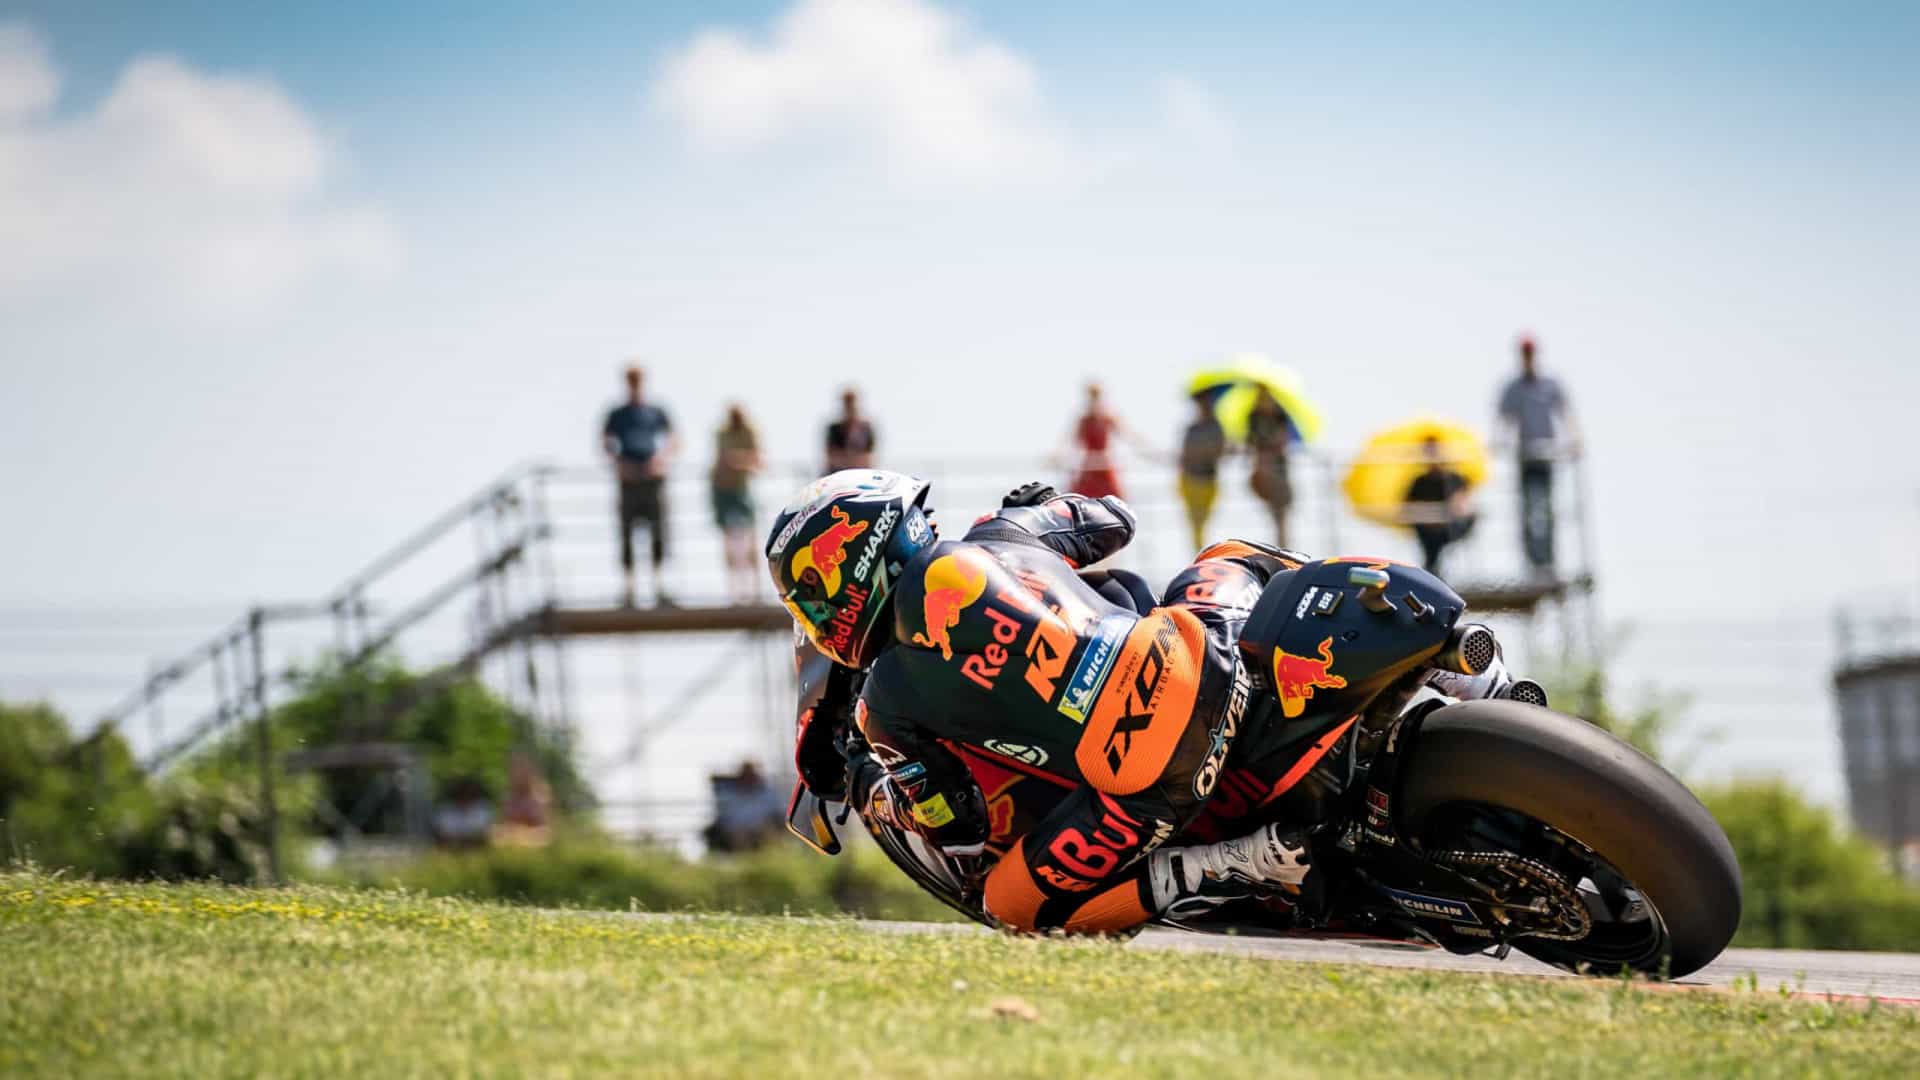 Líder da MotoGP, Márquez mira bom resultado na Catalunha